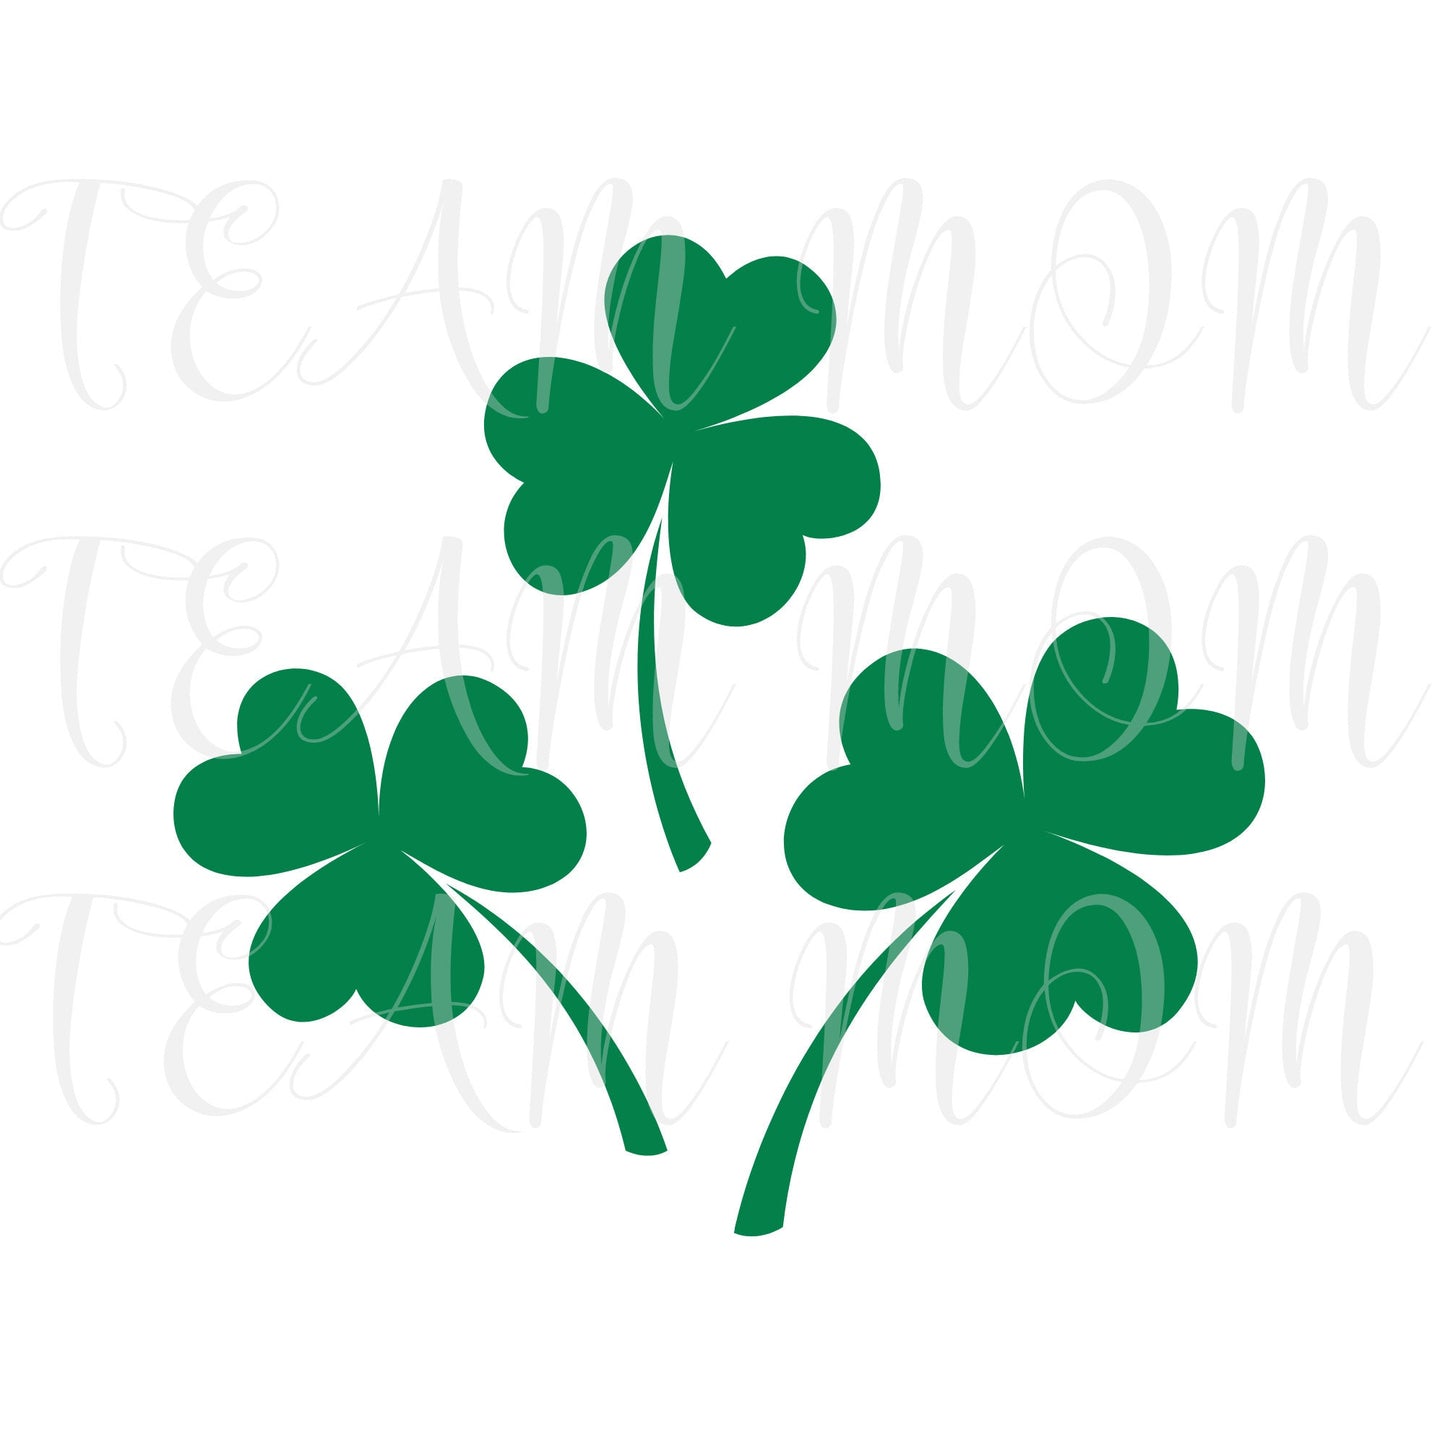 Shamrock svg, Clover svg, St. Patricks day svg, St. Patty's day, green shamrocks, good luck svg, luck of the Irish svg